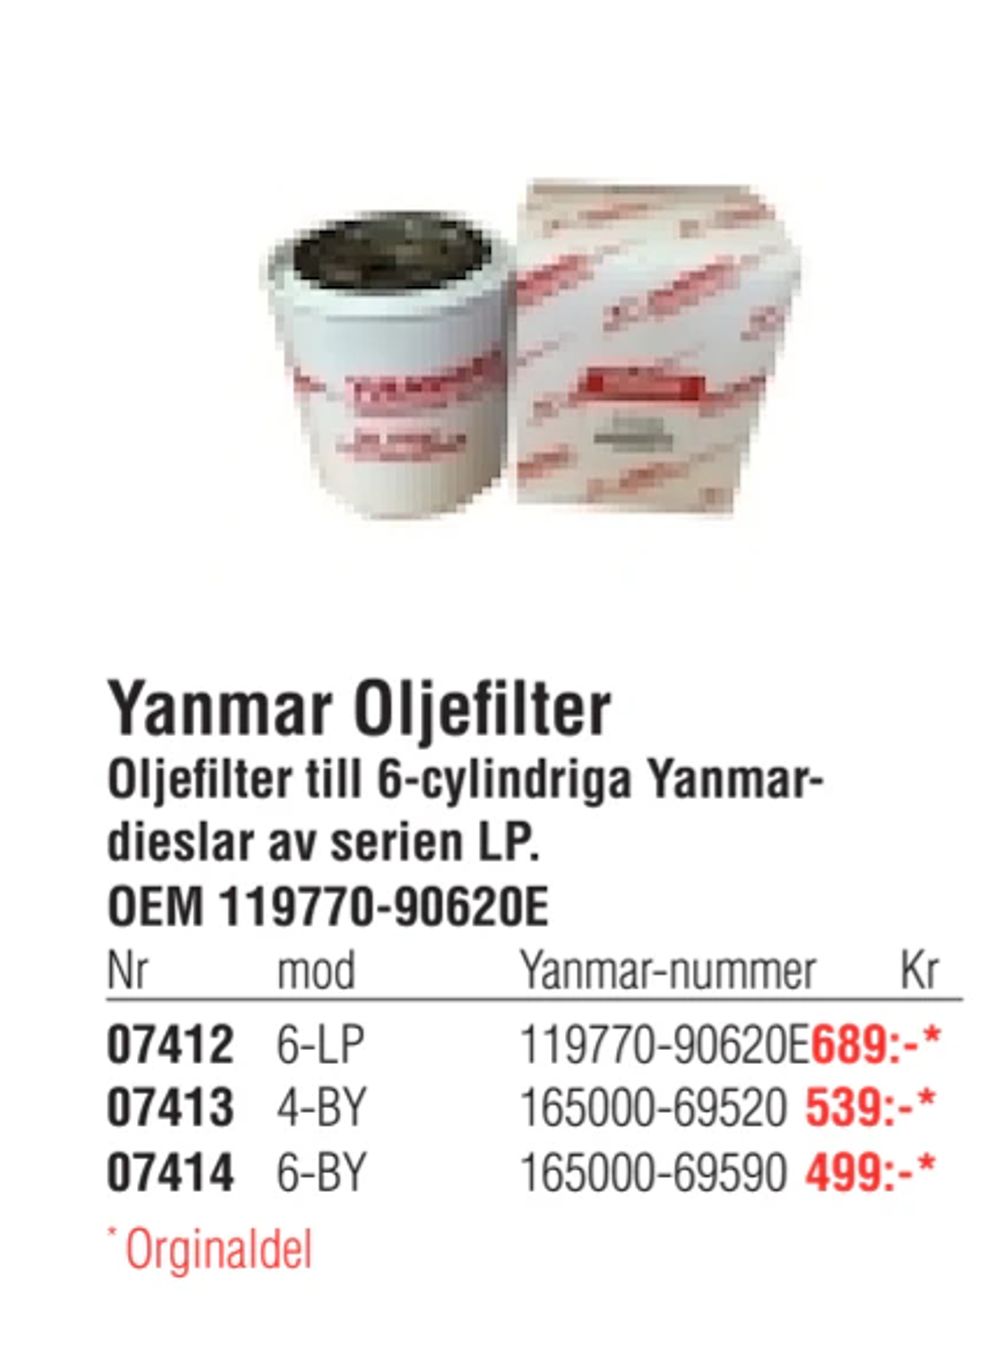 Erbjudanden på Yanmar Oljefilter från Erlandsons Brygga för 499 kr